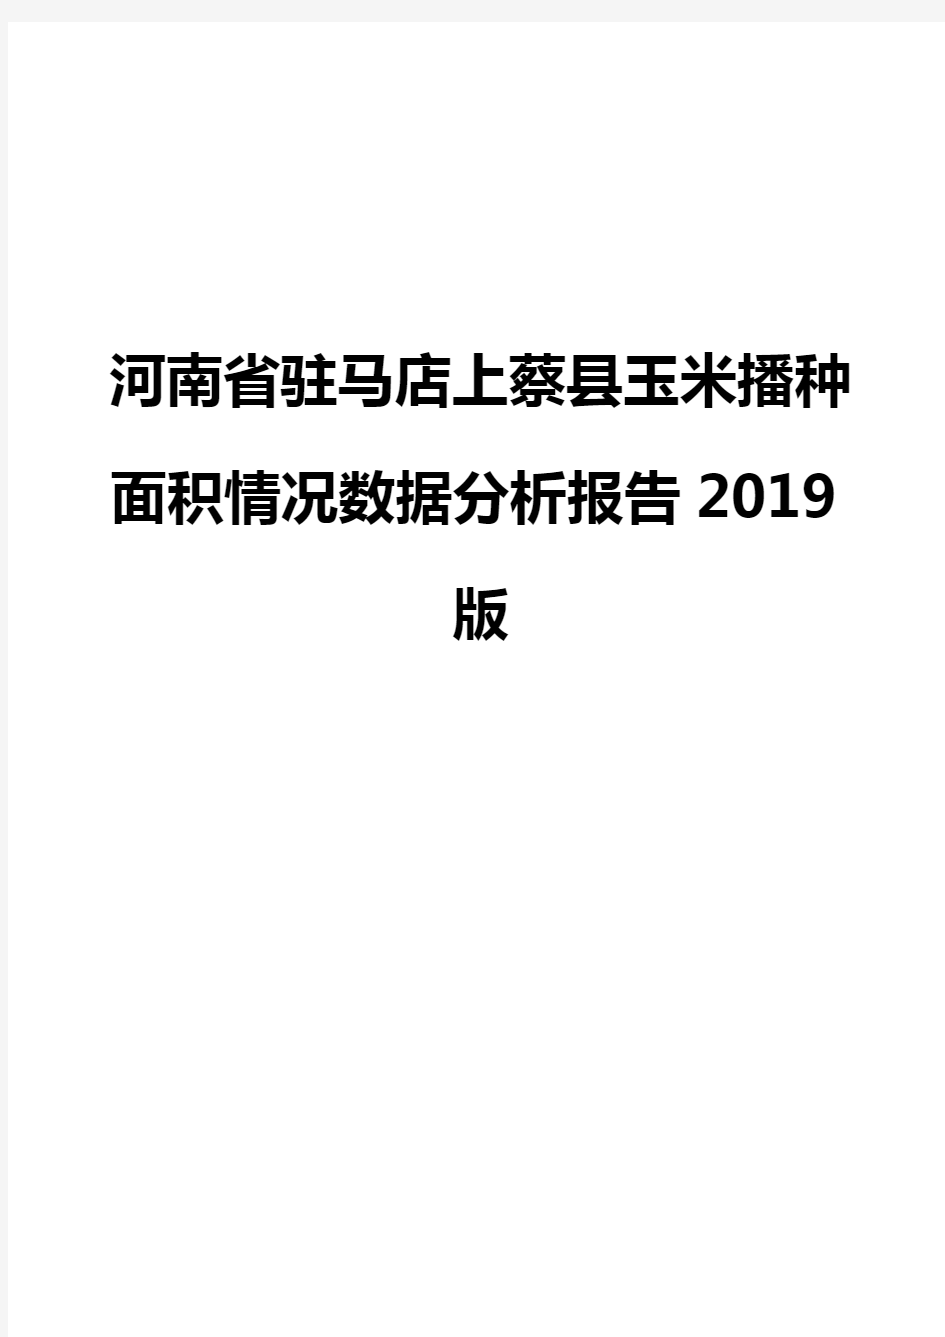 河南省驻马店上蔡县玉米播种面积情况数据分析报告2019版